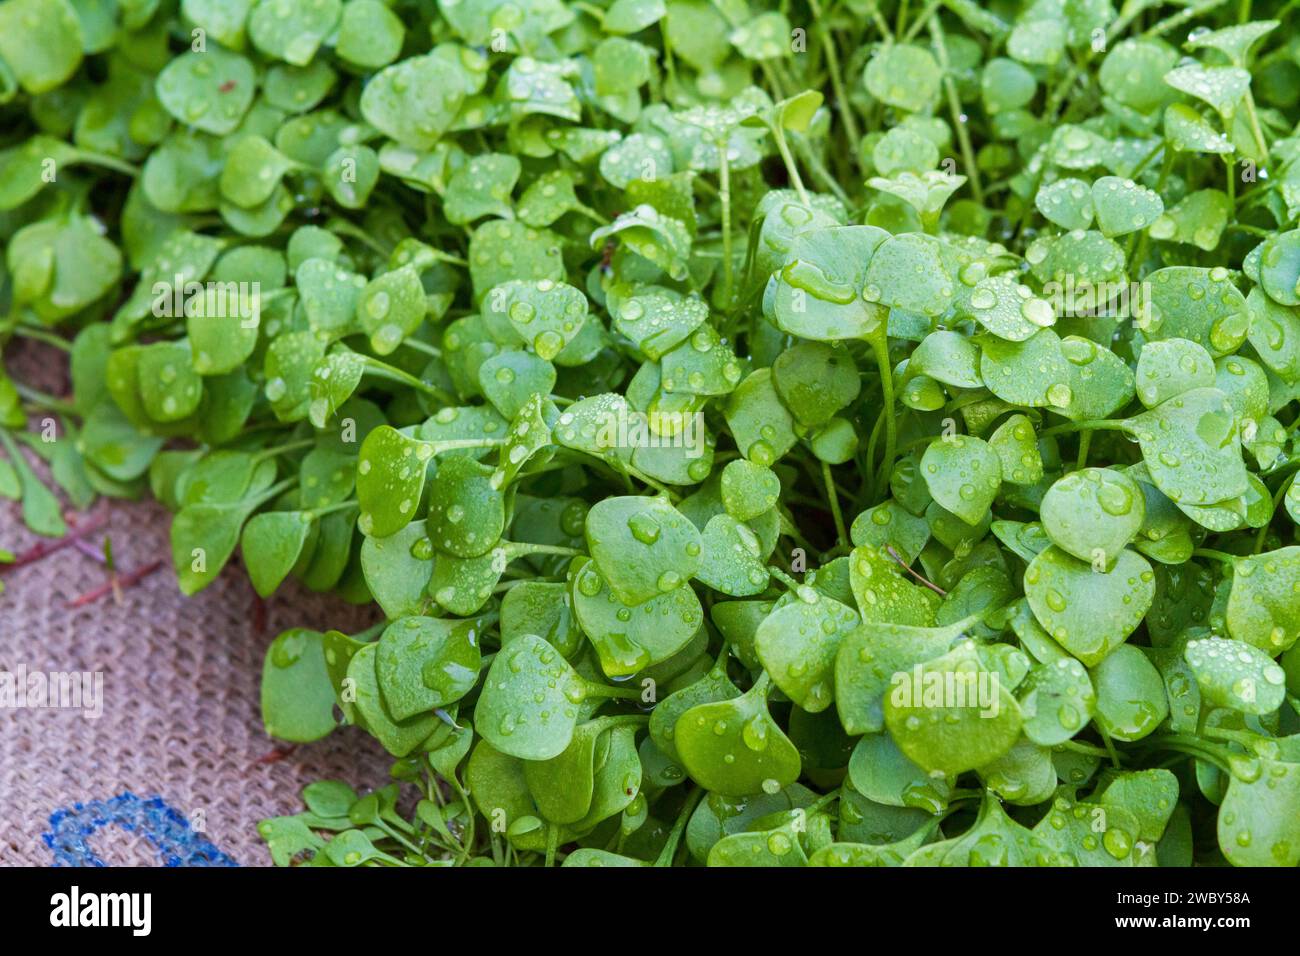 Jeunes feuilles vert vif tendres de laitue Miner alias purslane d'hiver (Claytonia peroliata), une saison fraîche nutritive, verte comestible tolérante au gel. Banque D'Images